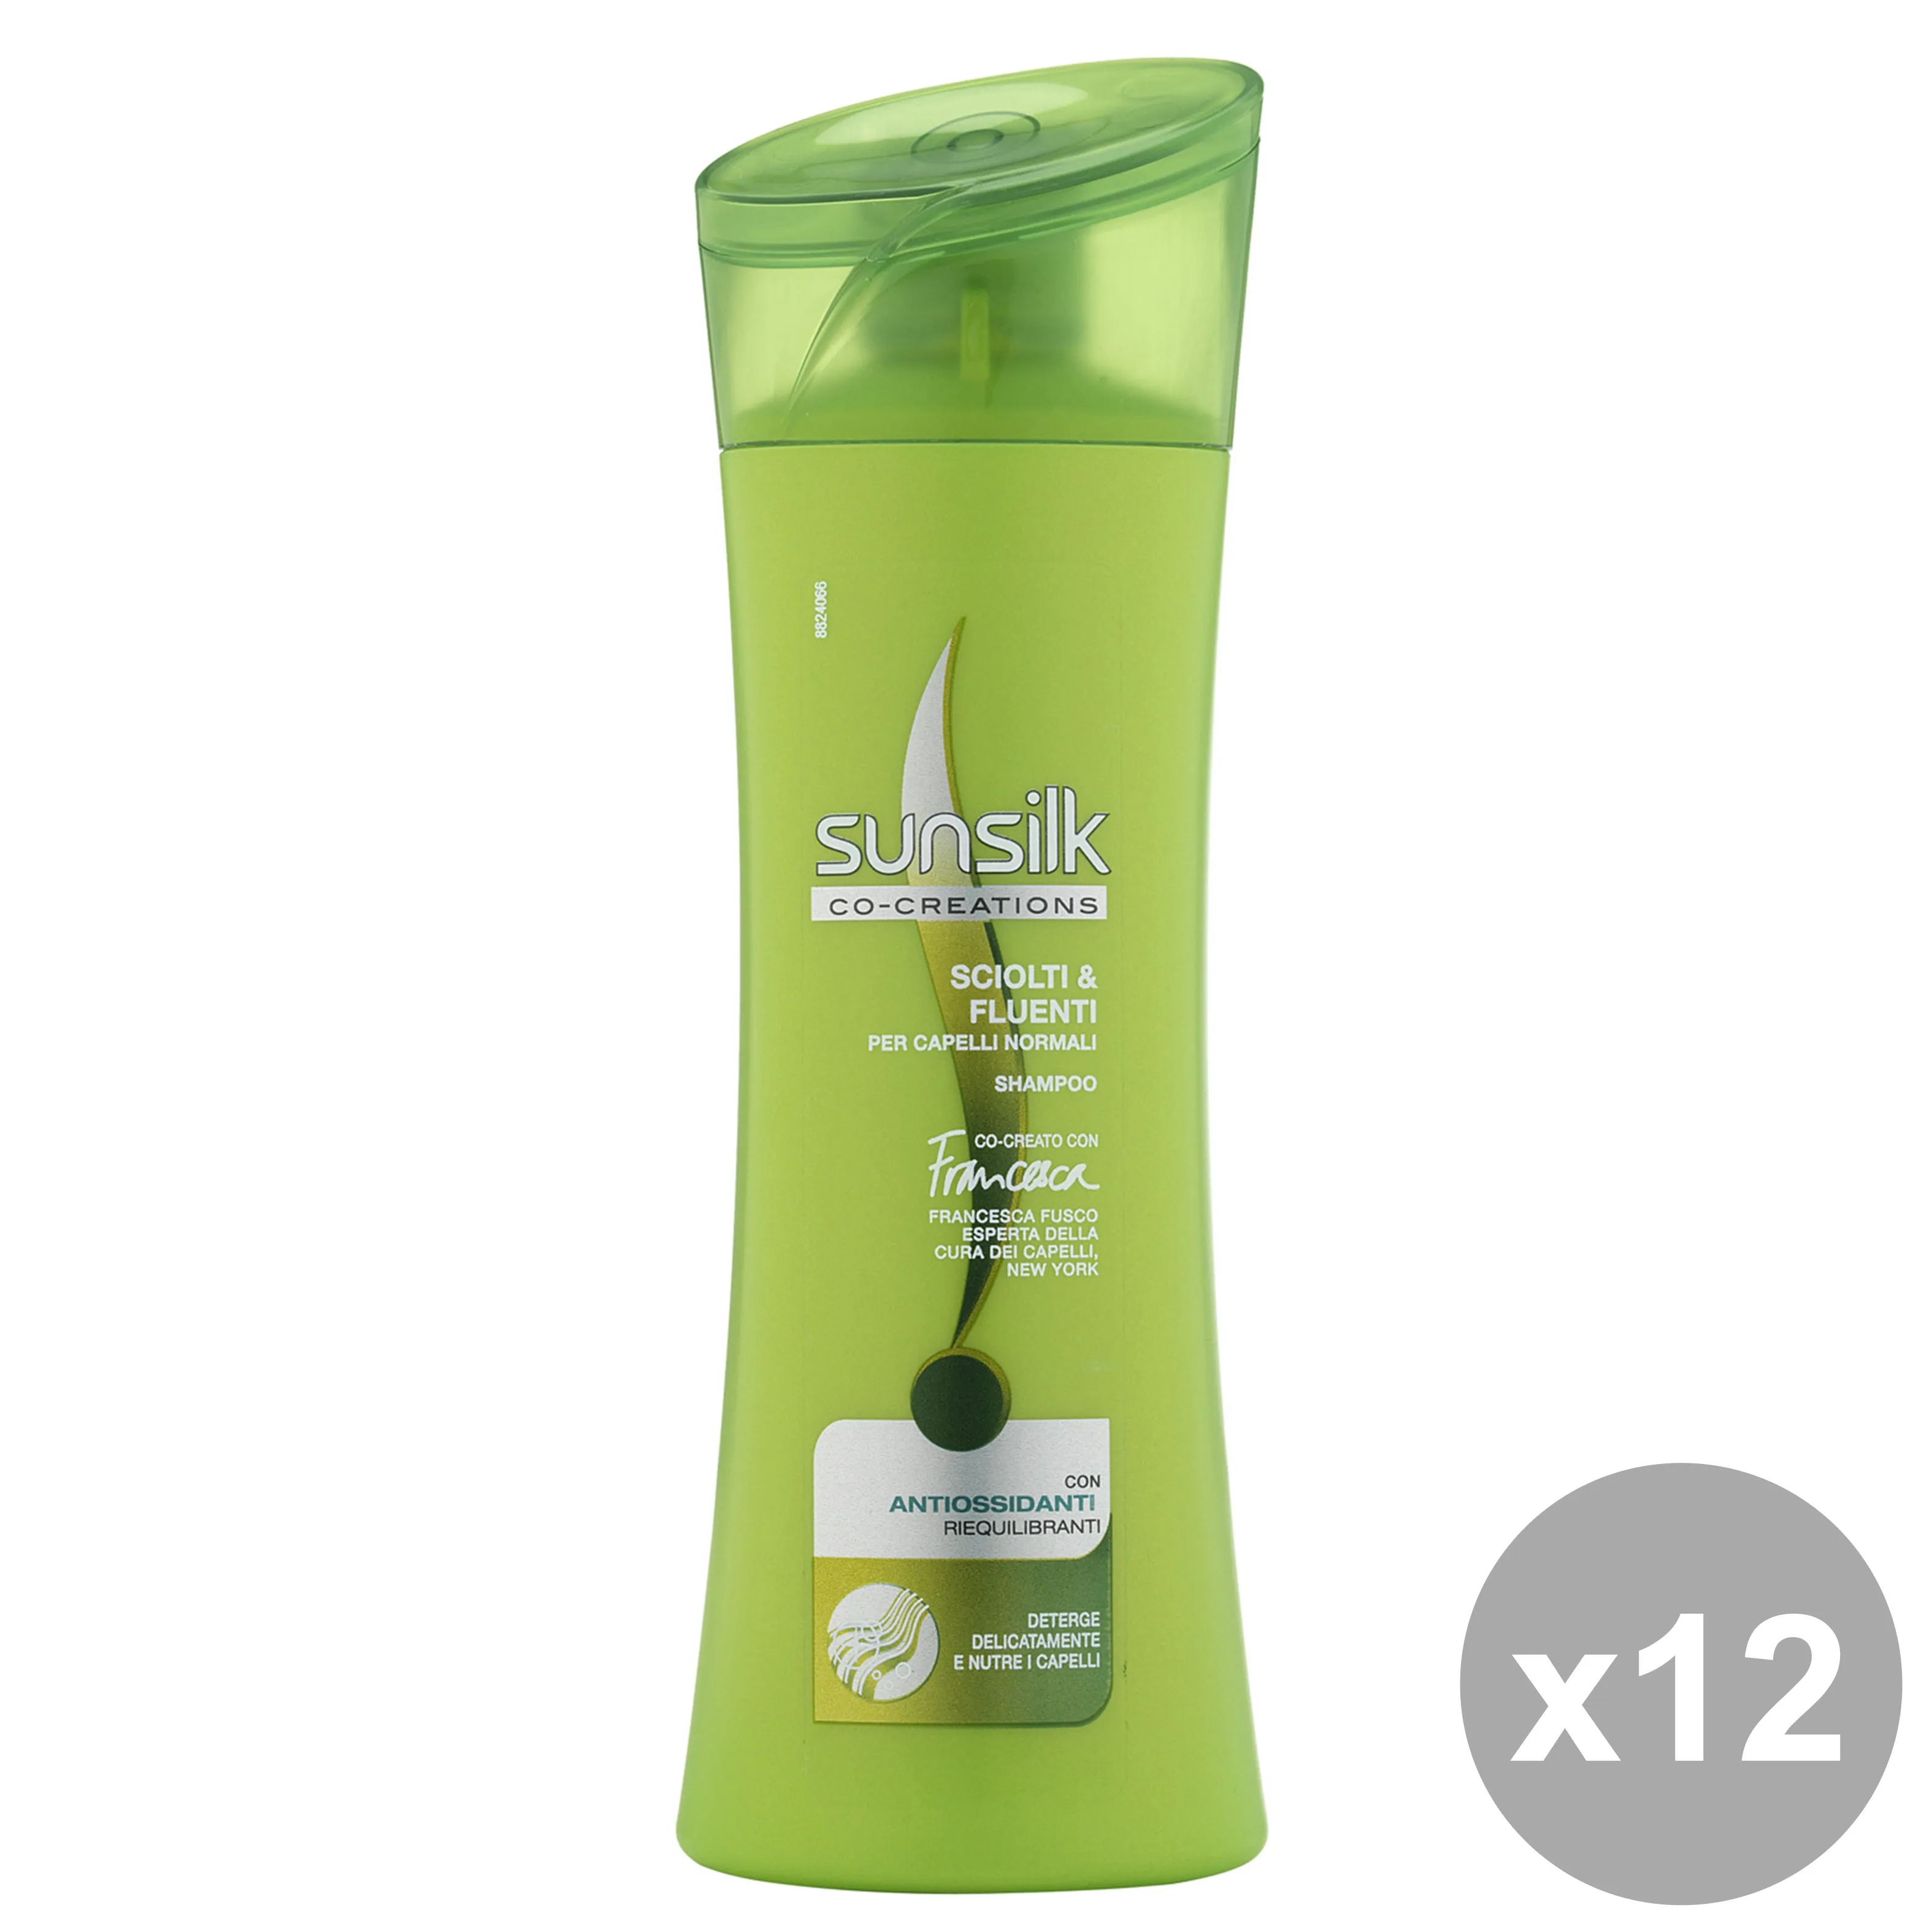 "Set 12 SUNSILK Shampoo Sciolti-Fluenti Verde 250 Ml.  Prodotti per capelli"